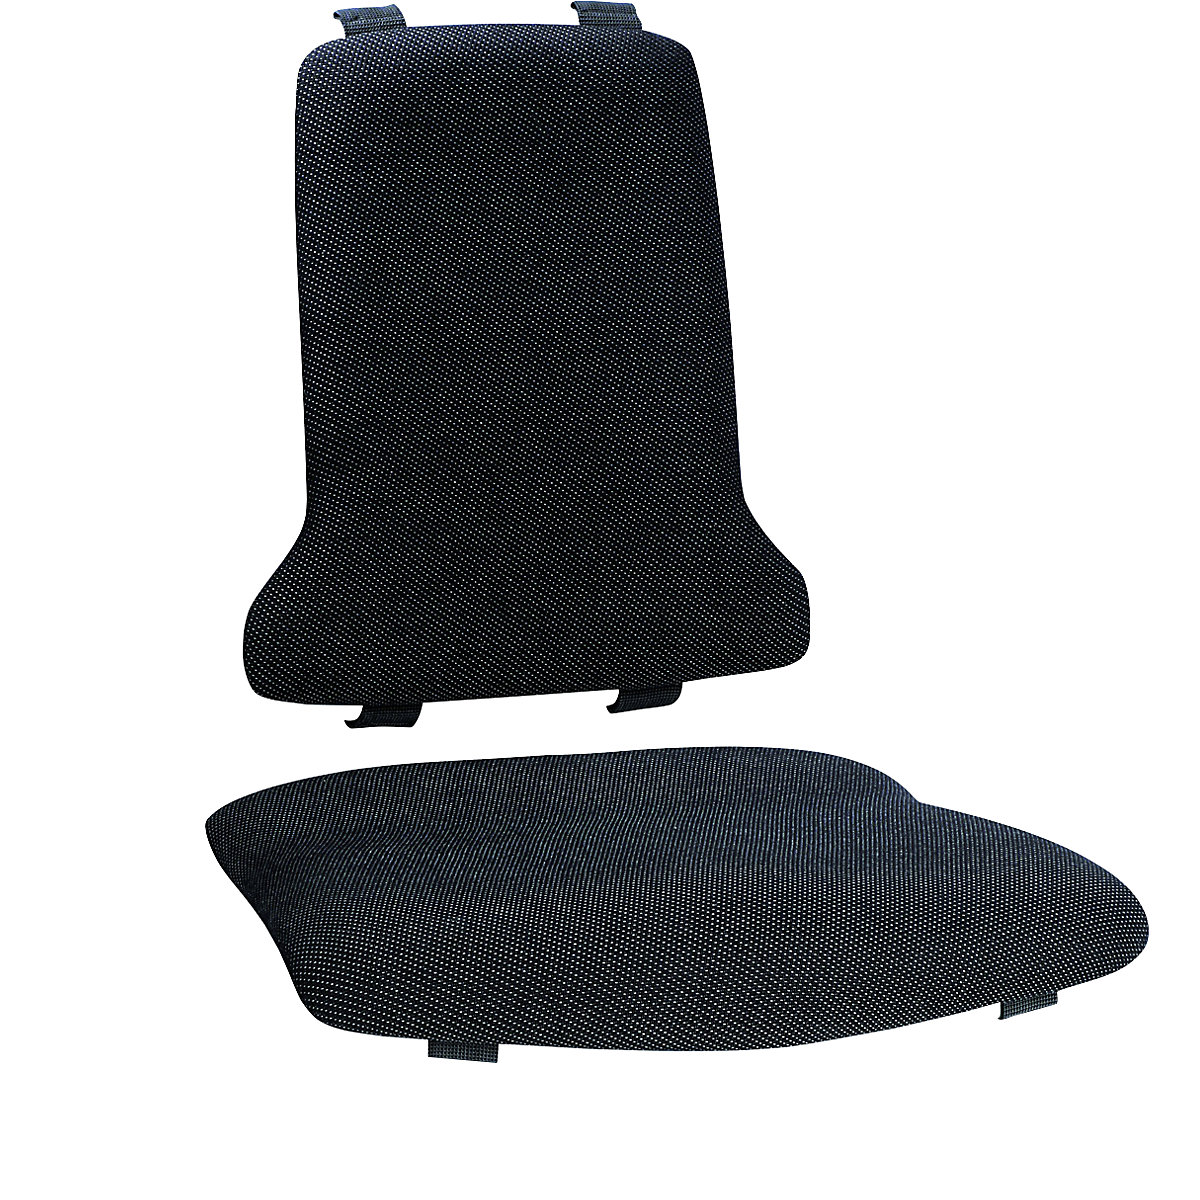 Polster bimos, Standard-Ausführung, je 1 Polster für Sitz und Rückenlehne, Textil-Polster, schwarz-5